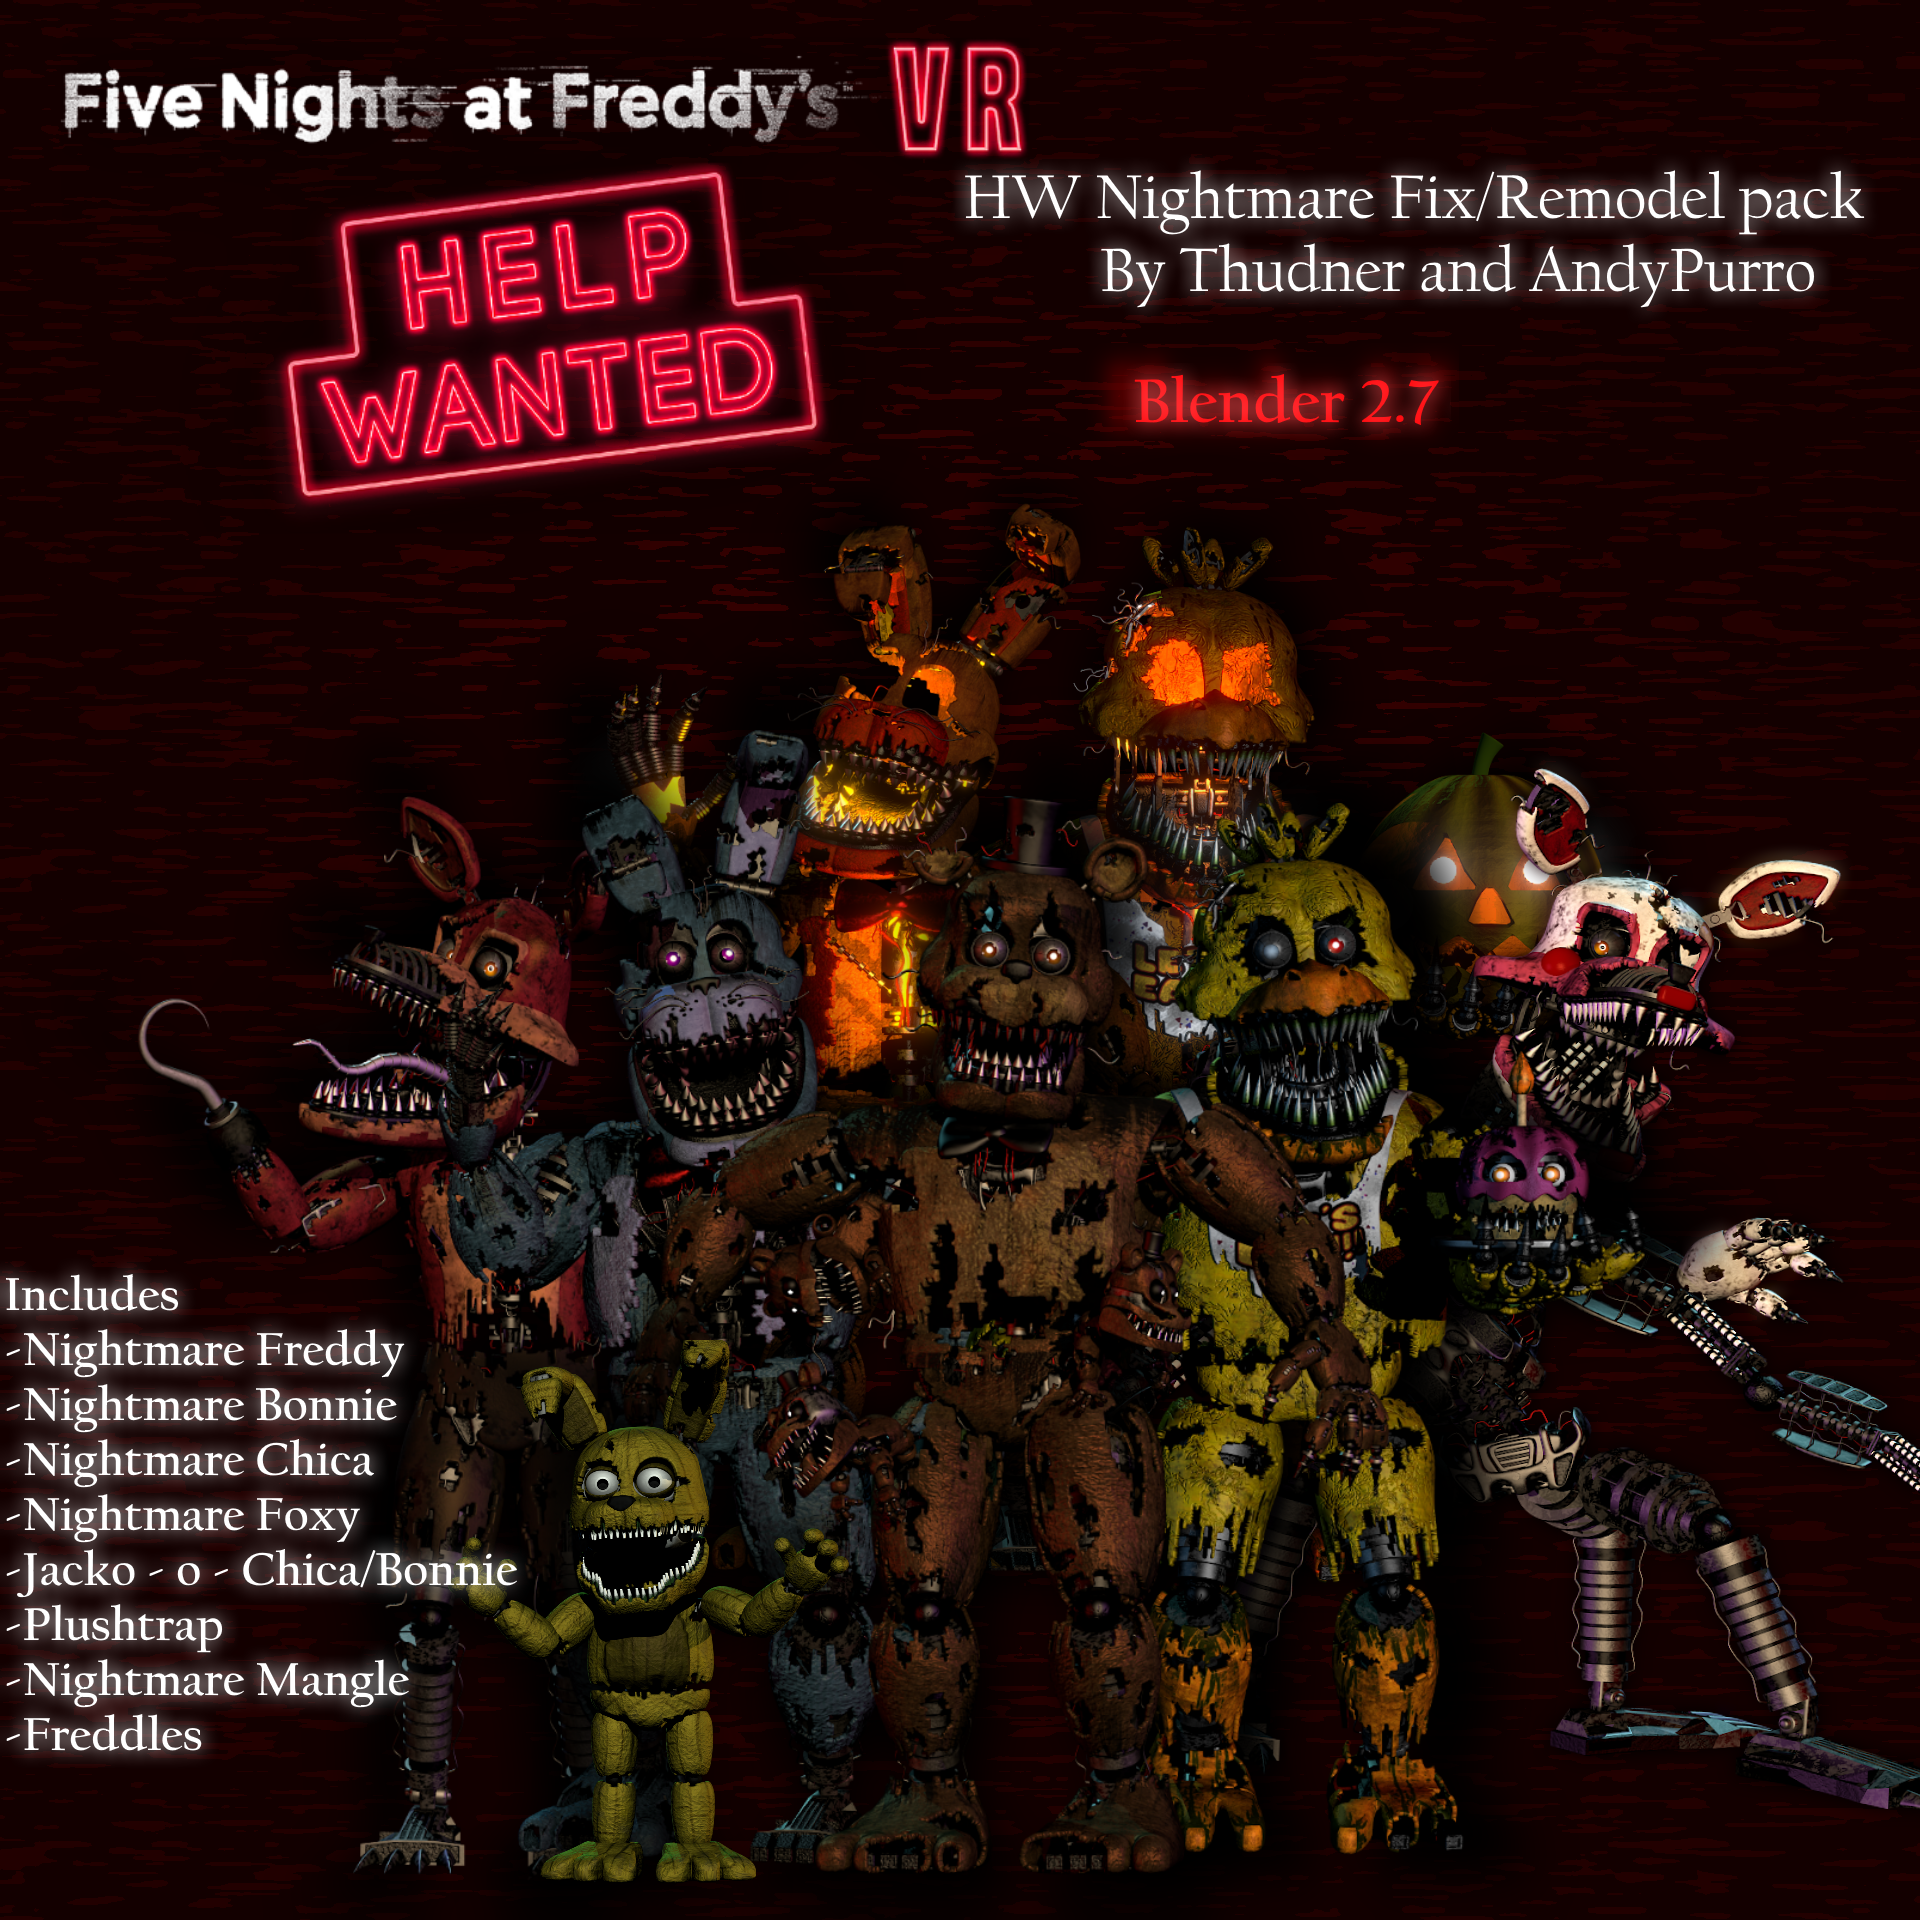 Nightmare Fredbear (FNaF 4 SFM Render) - 1 by MikeTHM93 on DeviantArt